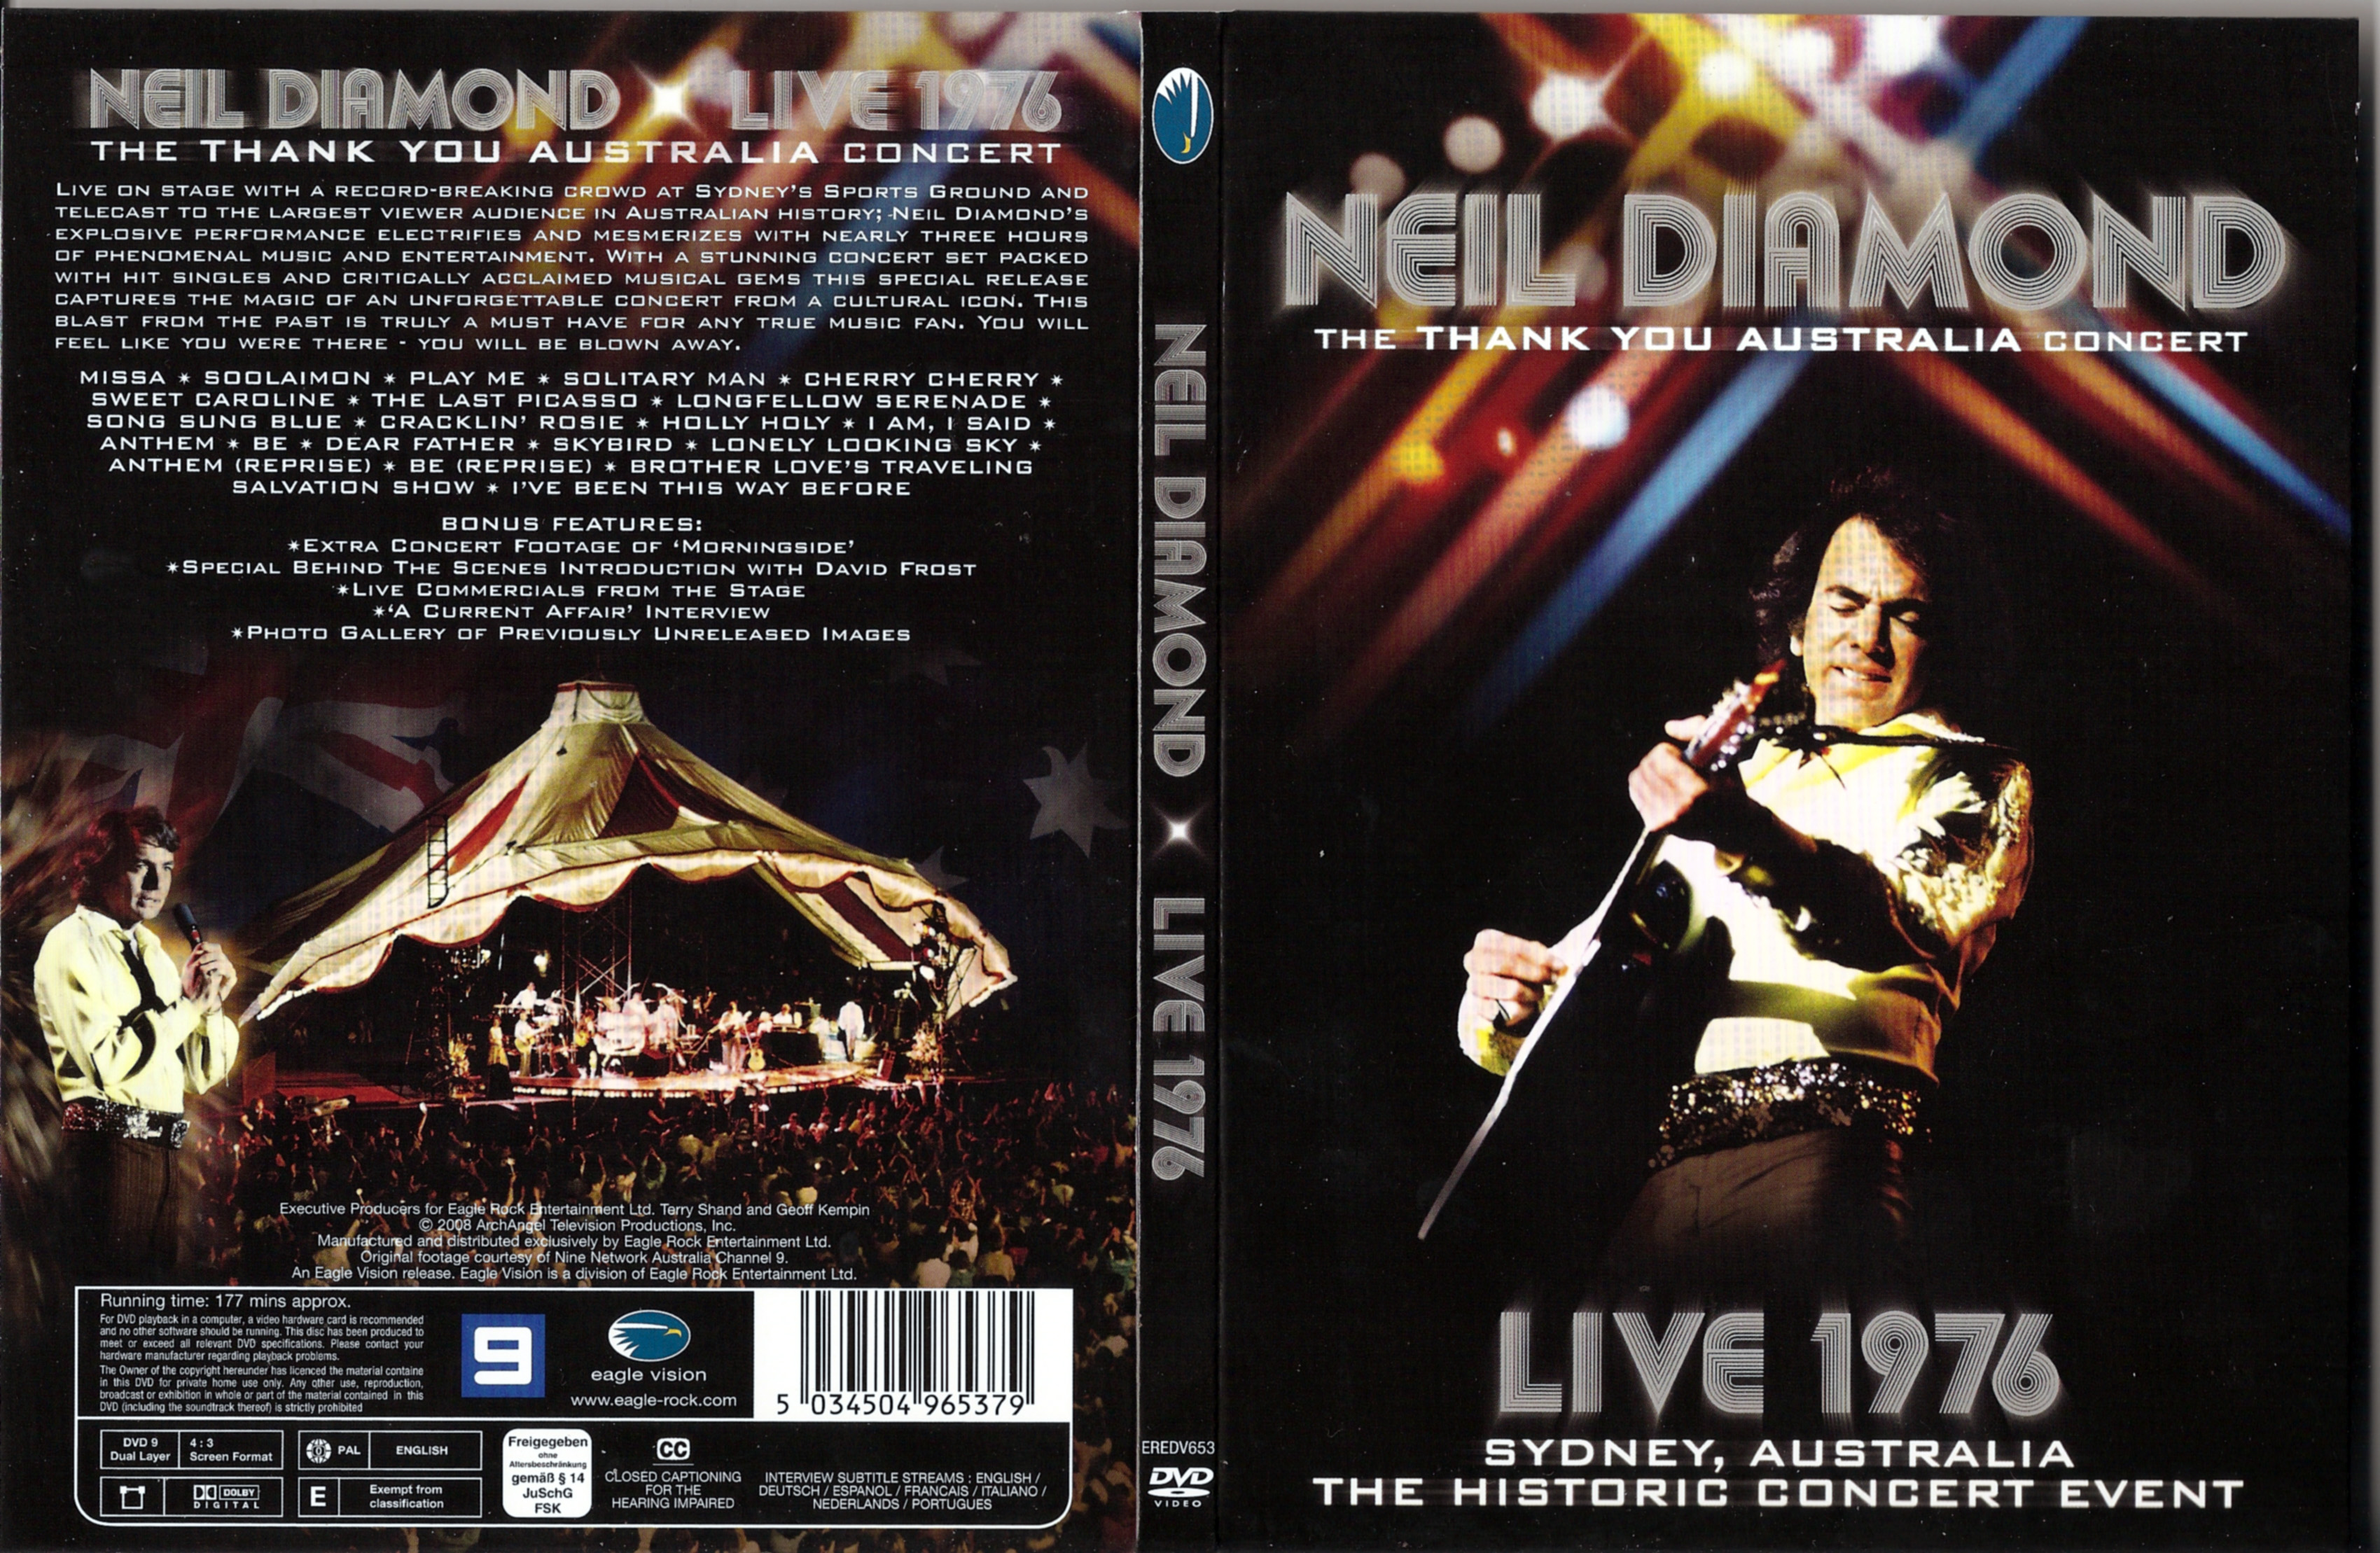 Jaquette DVD Neil Diamond Live 1976